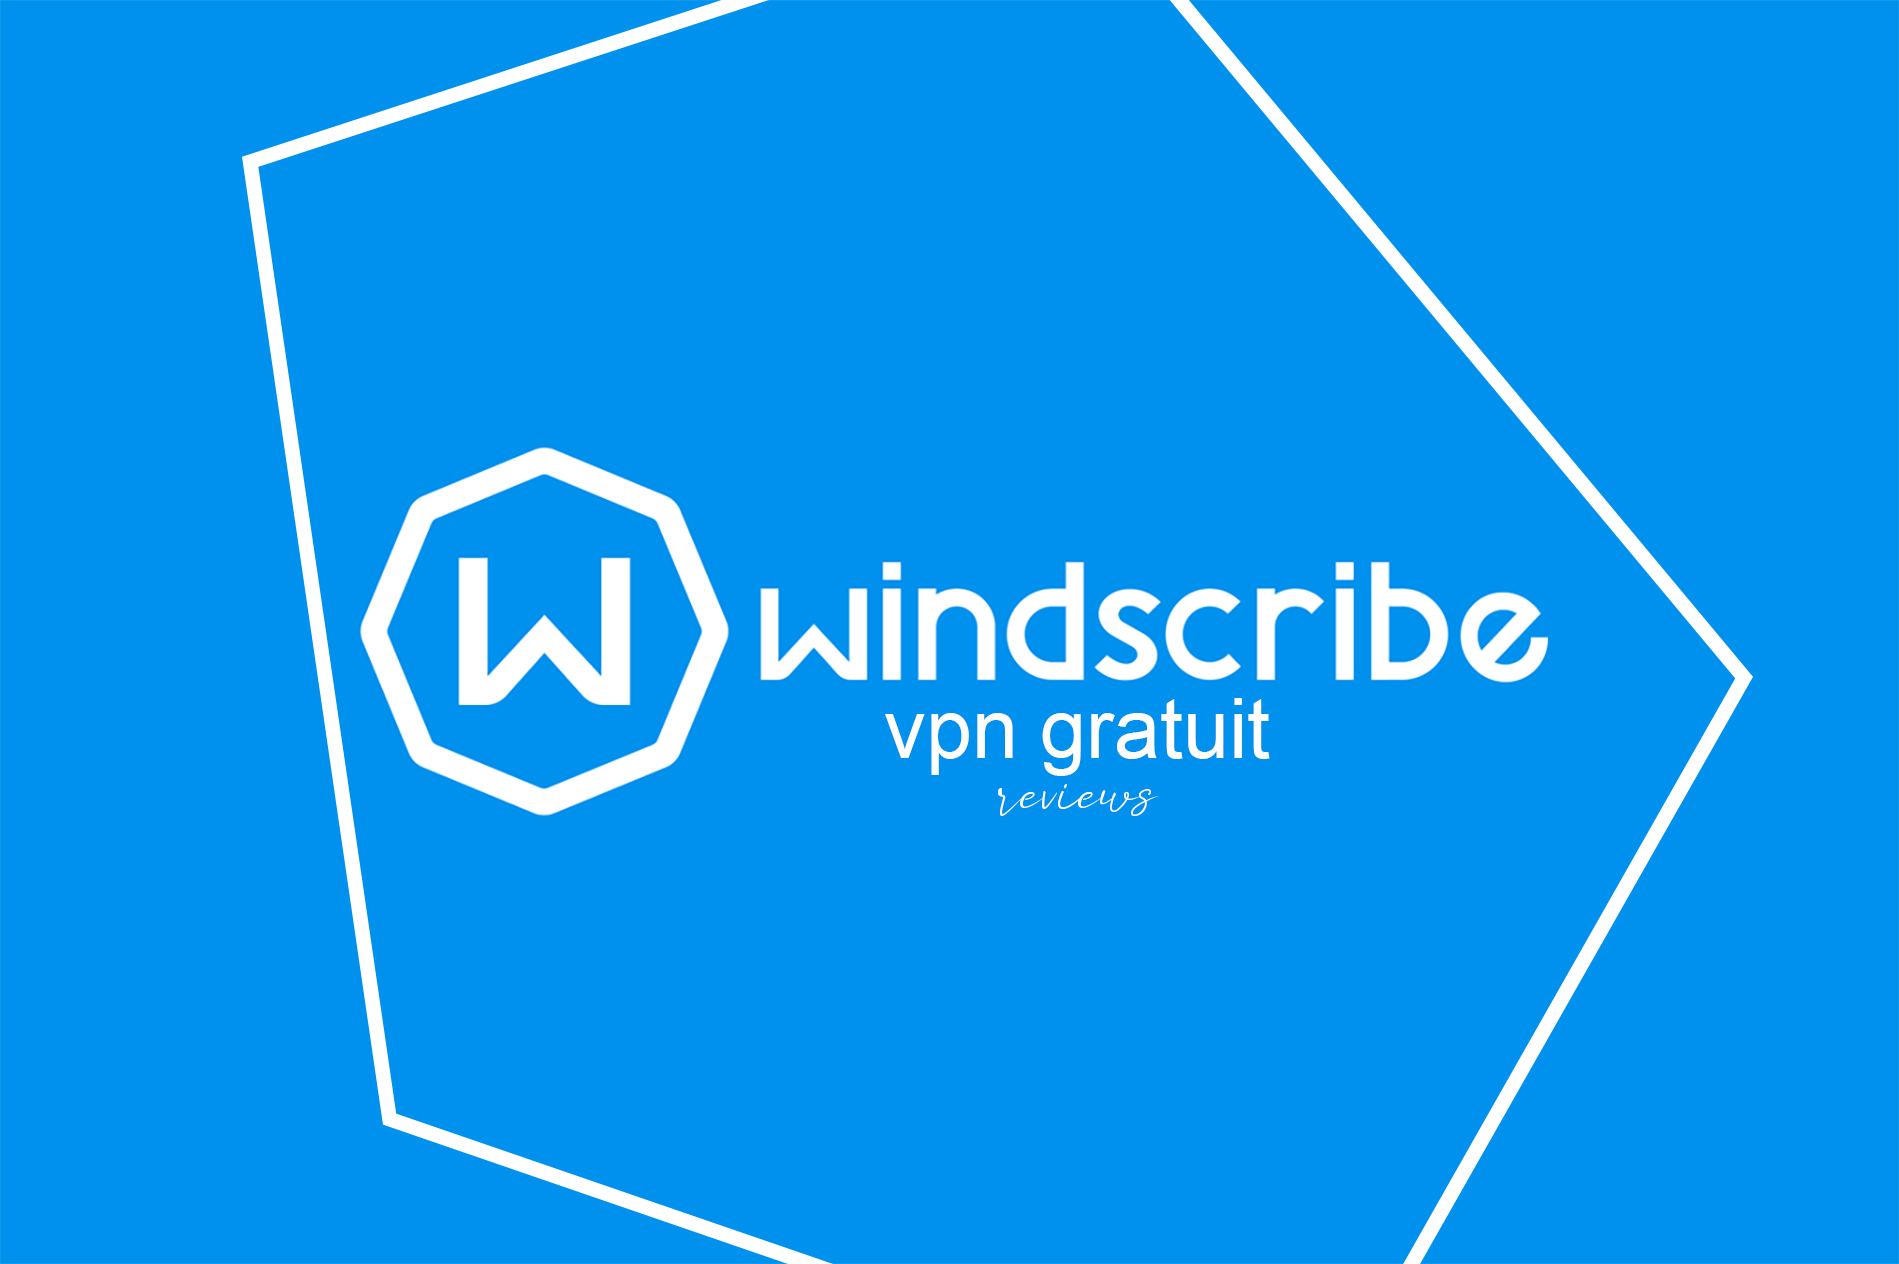 Windscribe: Best Multi-Featured Free VPN